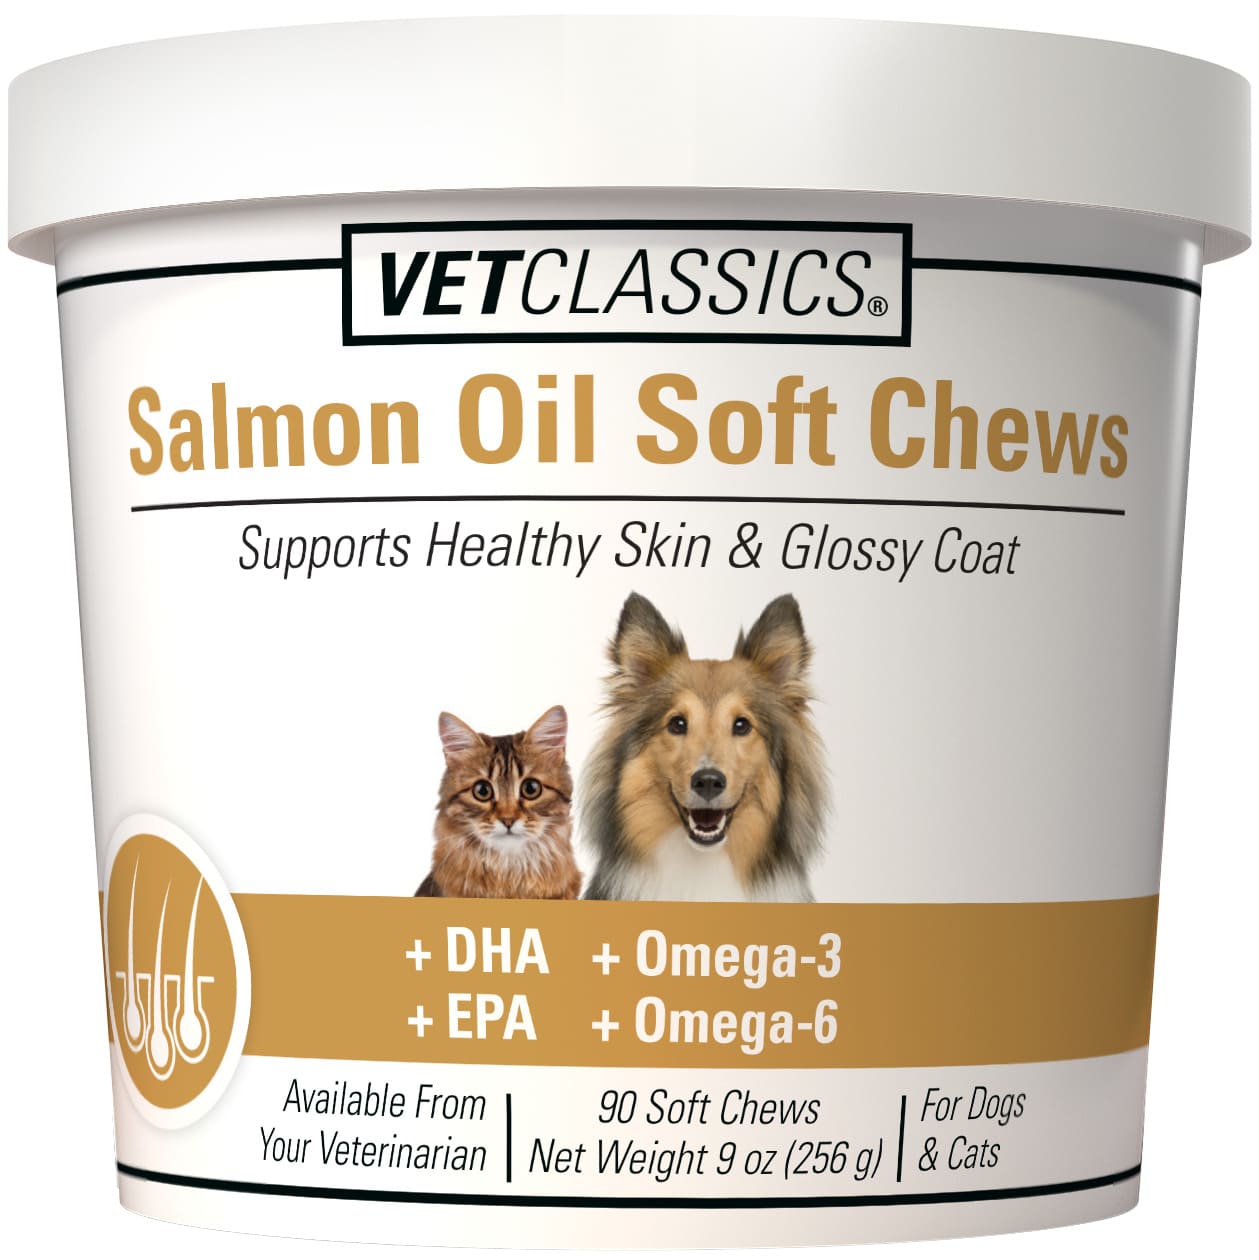 VetClassics Salmon Oil Soft Chews